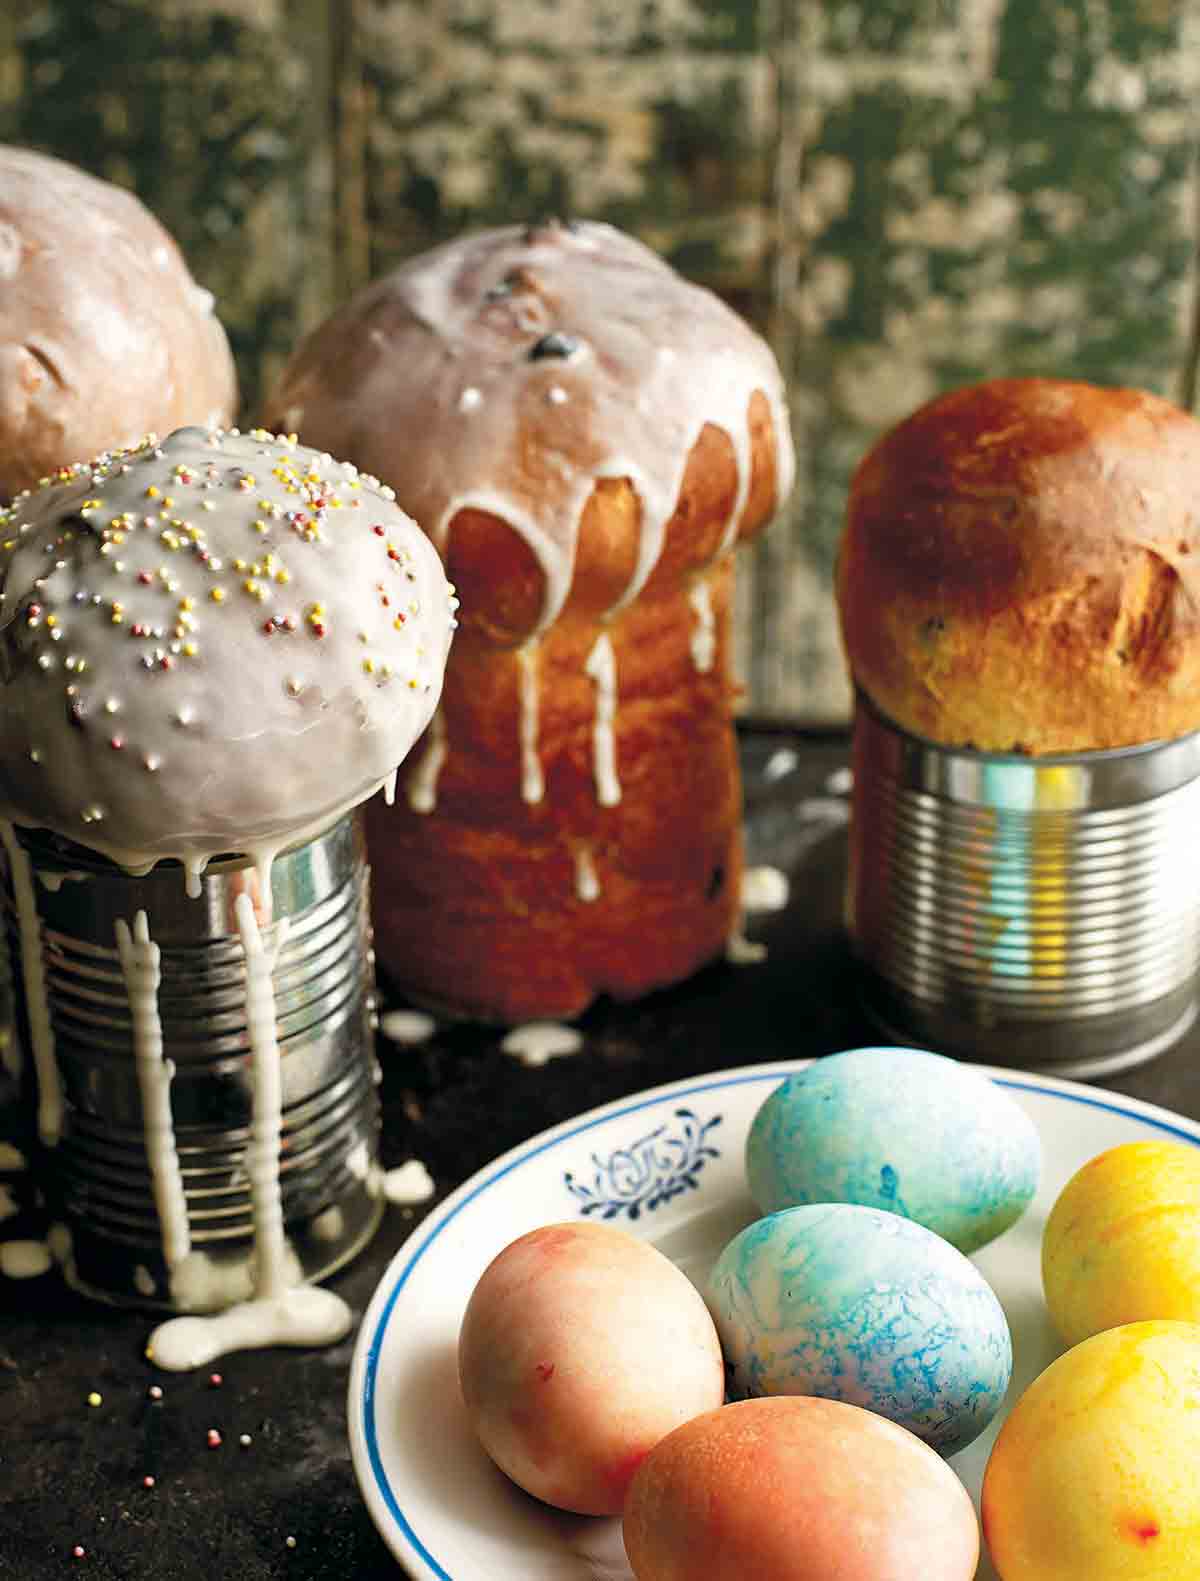 Fyra limpor ukrainskt påskbröd, paska, med en skål med färgade ägg framför sig